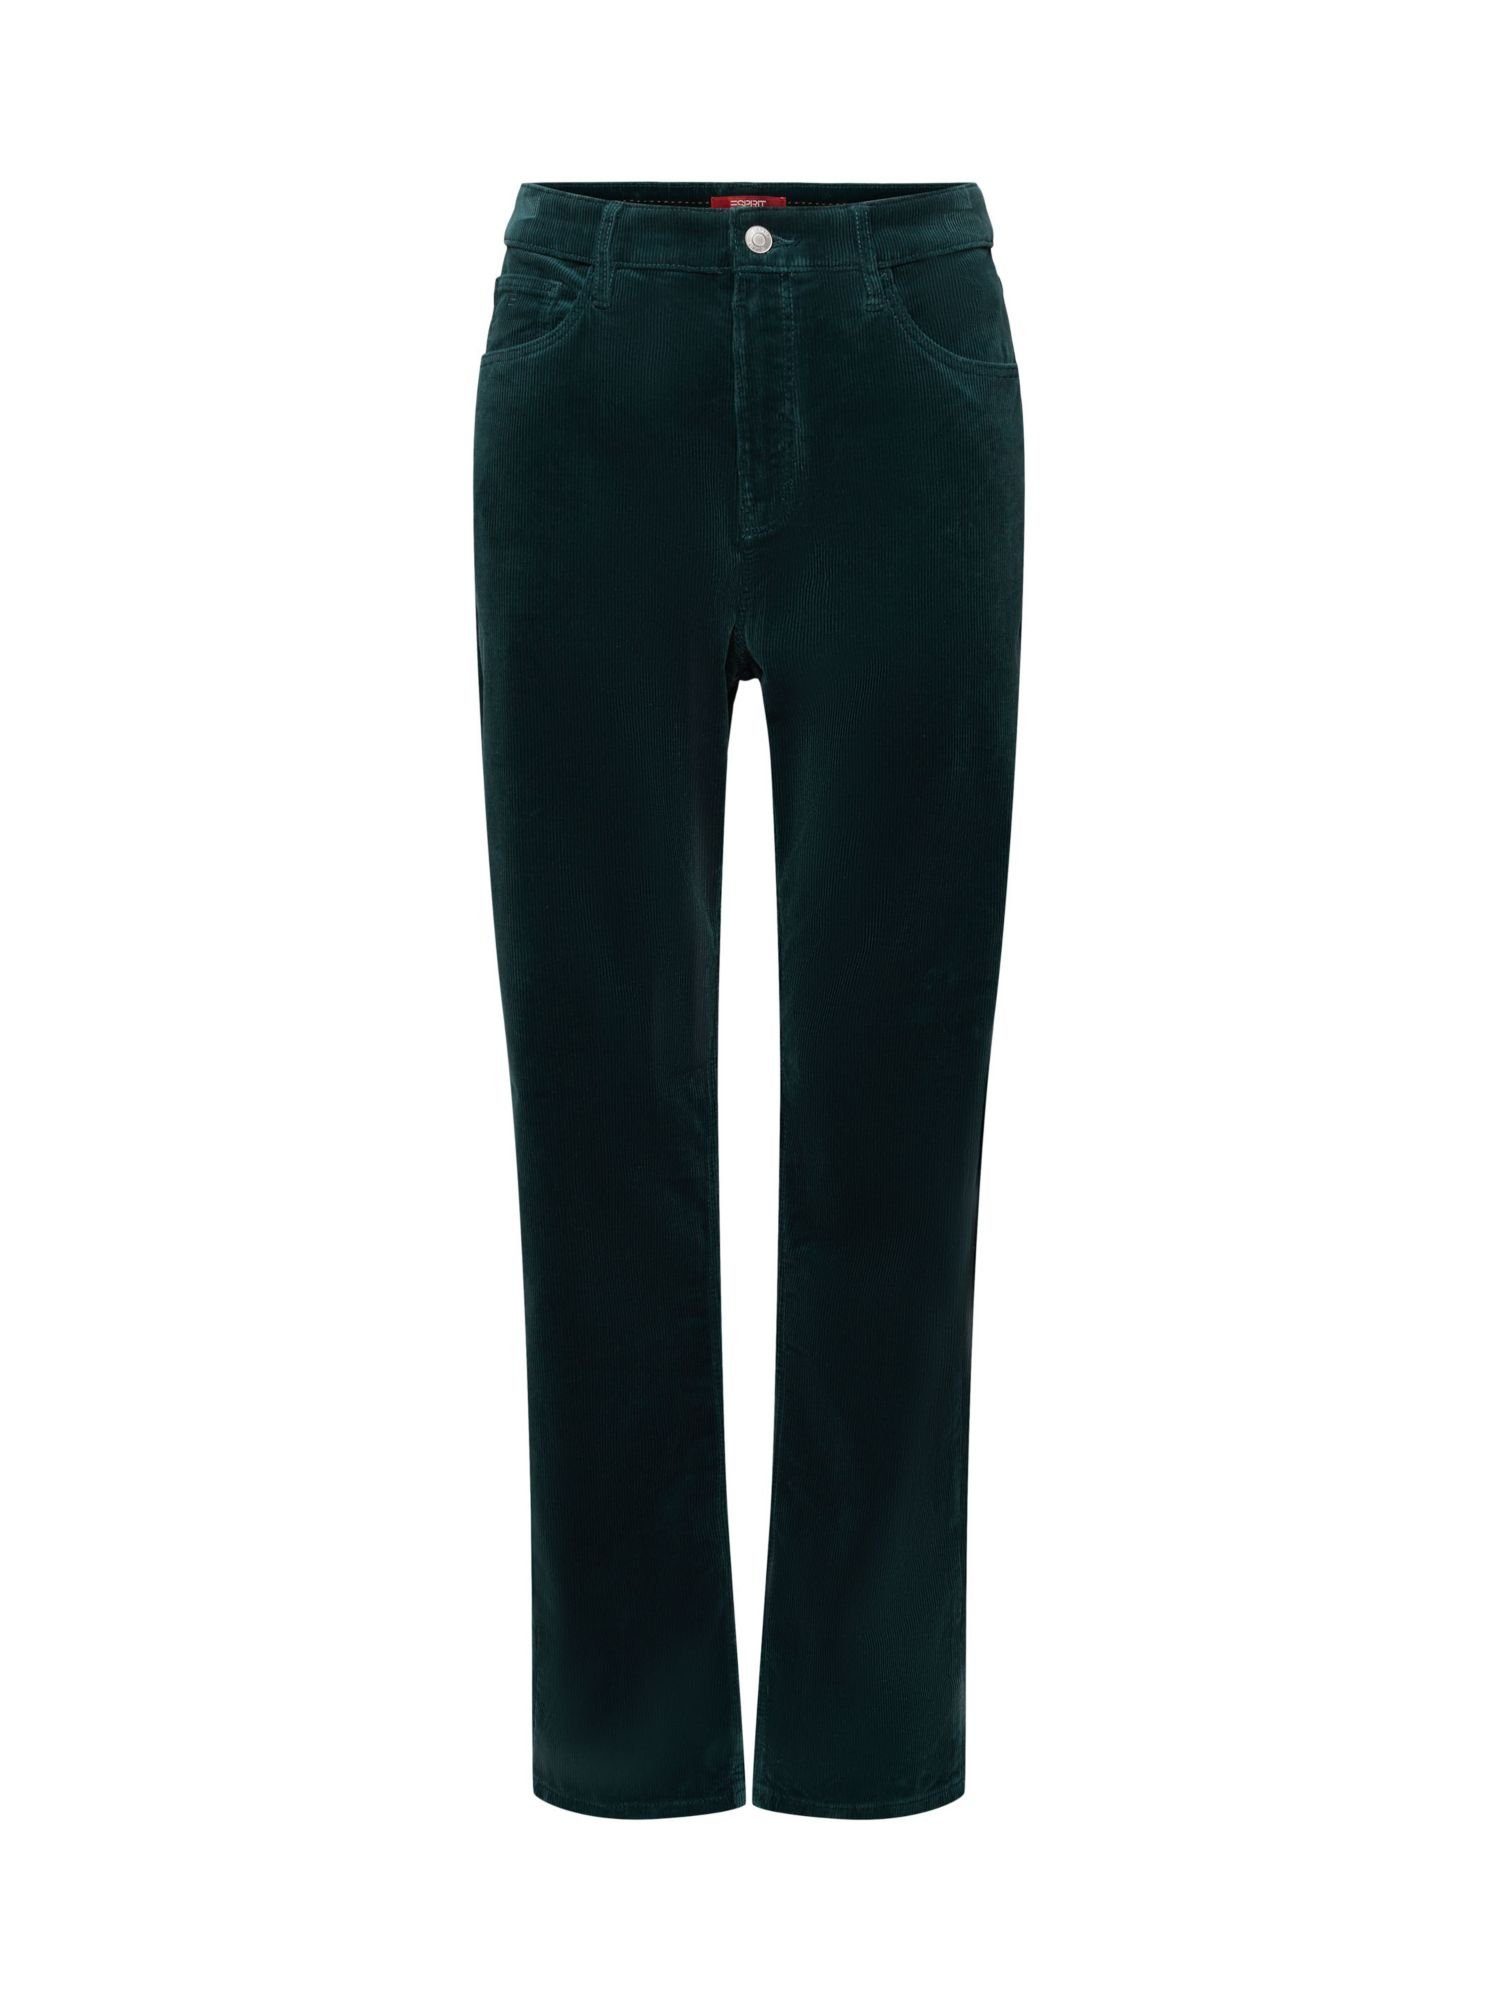 EMERALD GREEN mit Passform gerader Cordhose Bund Slim-fit-Jeans und hohem Esprit